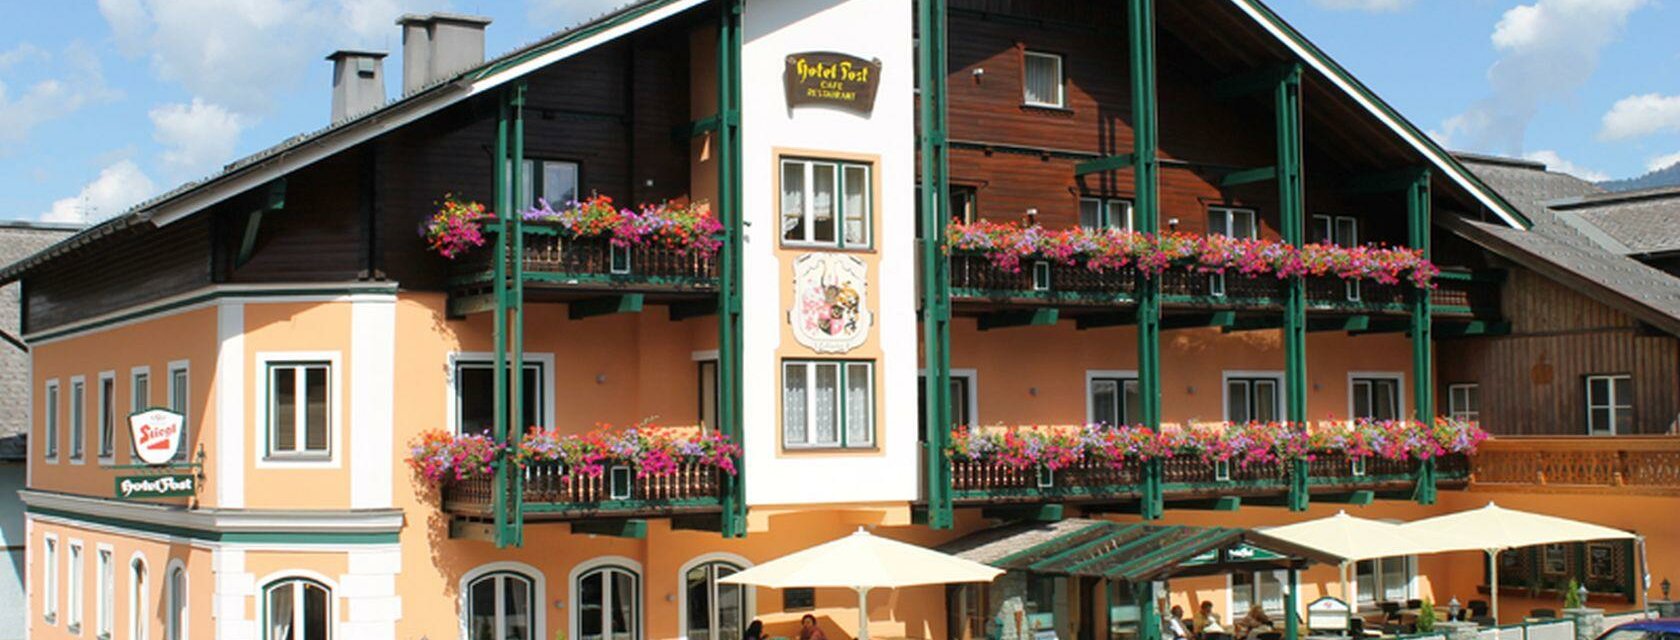 Hotel Post im Zentrum von Bad Mitterndorf